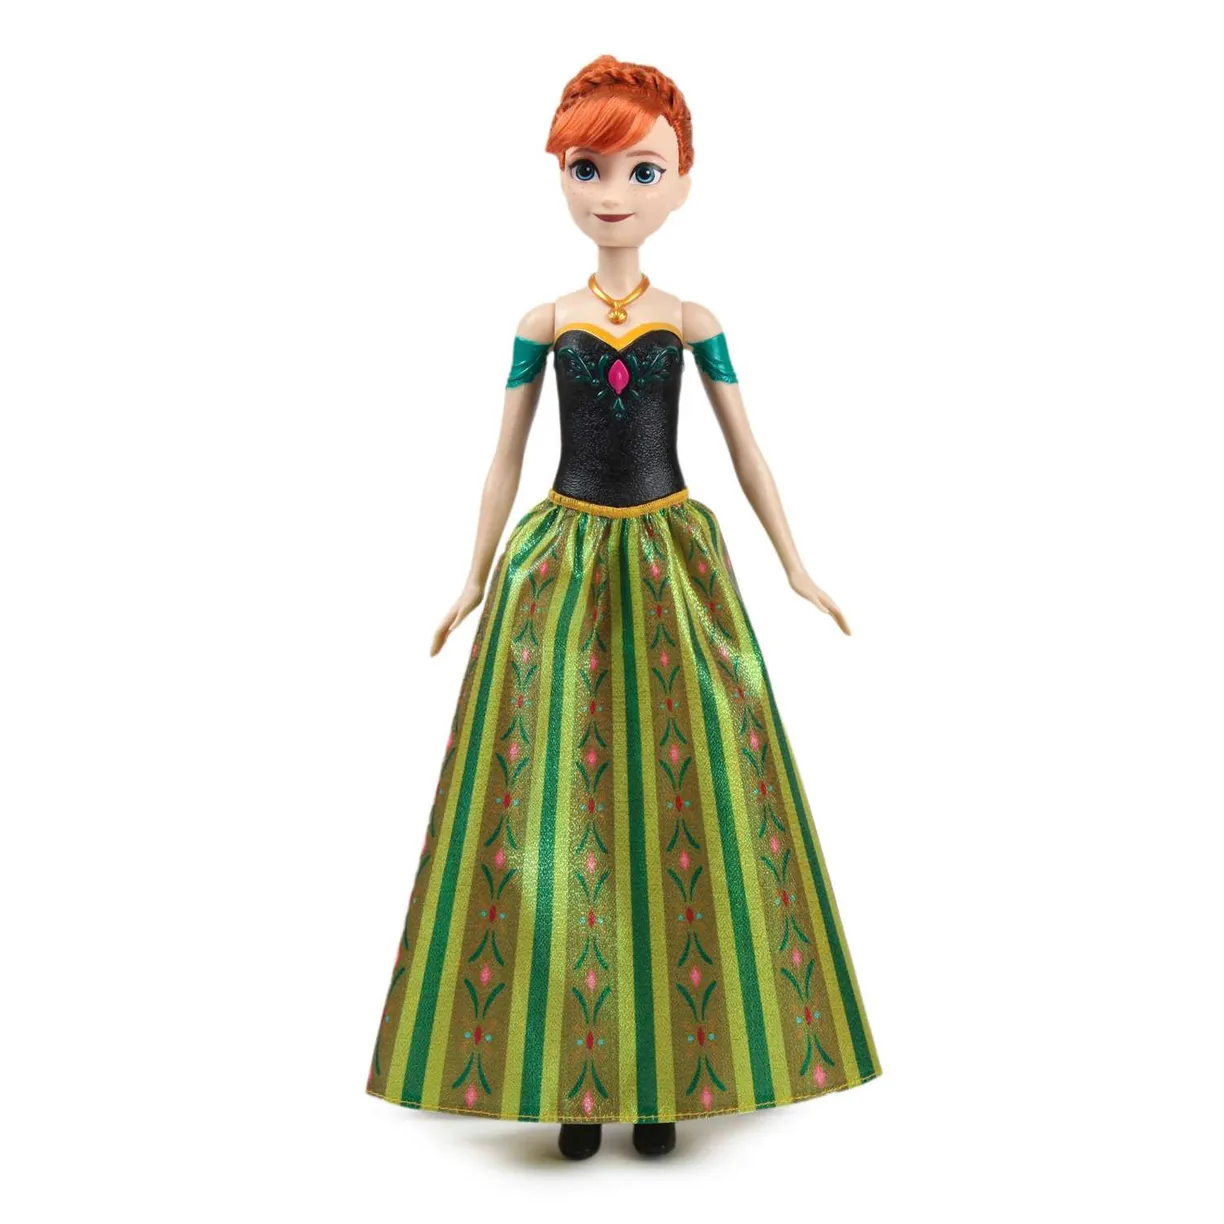 Поющая Кукла Disney Princess Анна Холодное сердце поющая, HMG41 кукла disney моана музыкальная 30 см